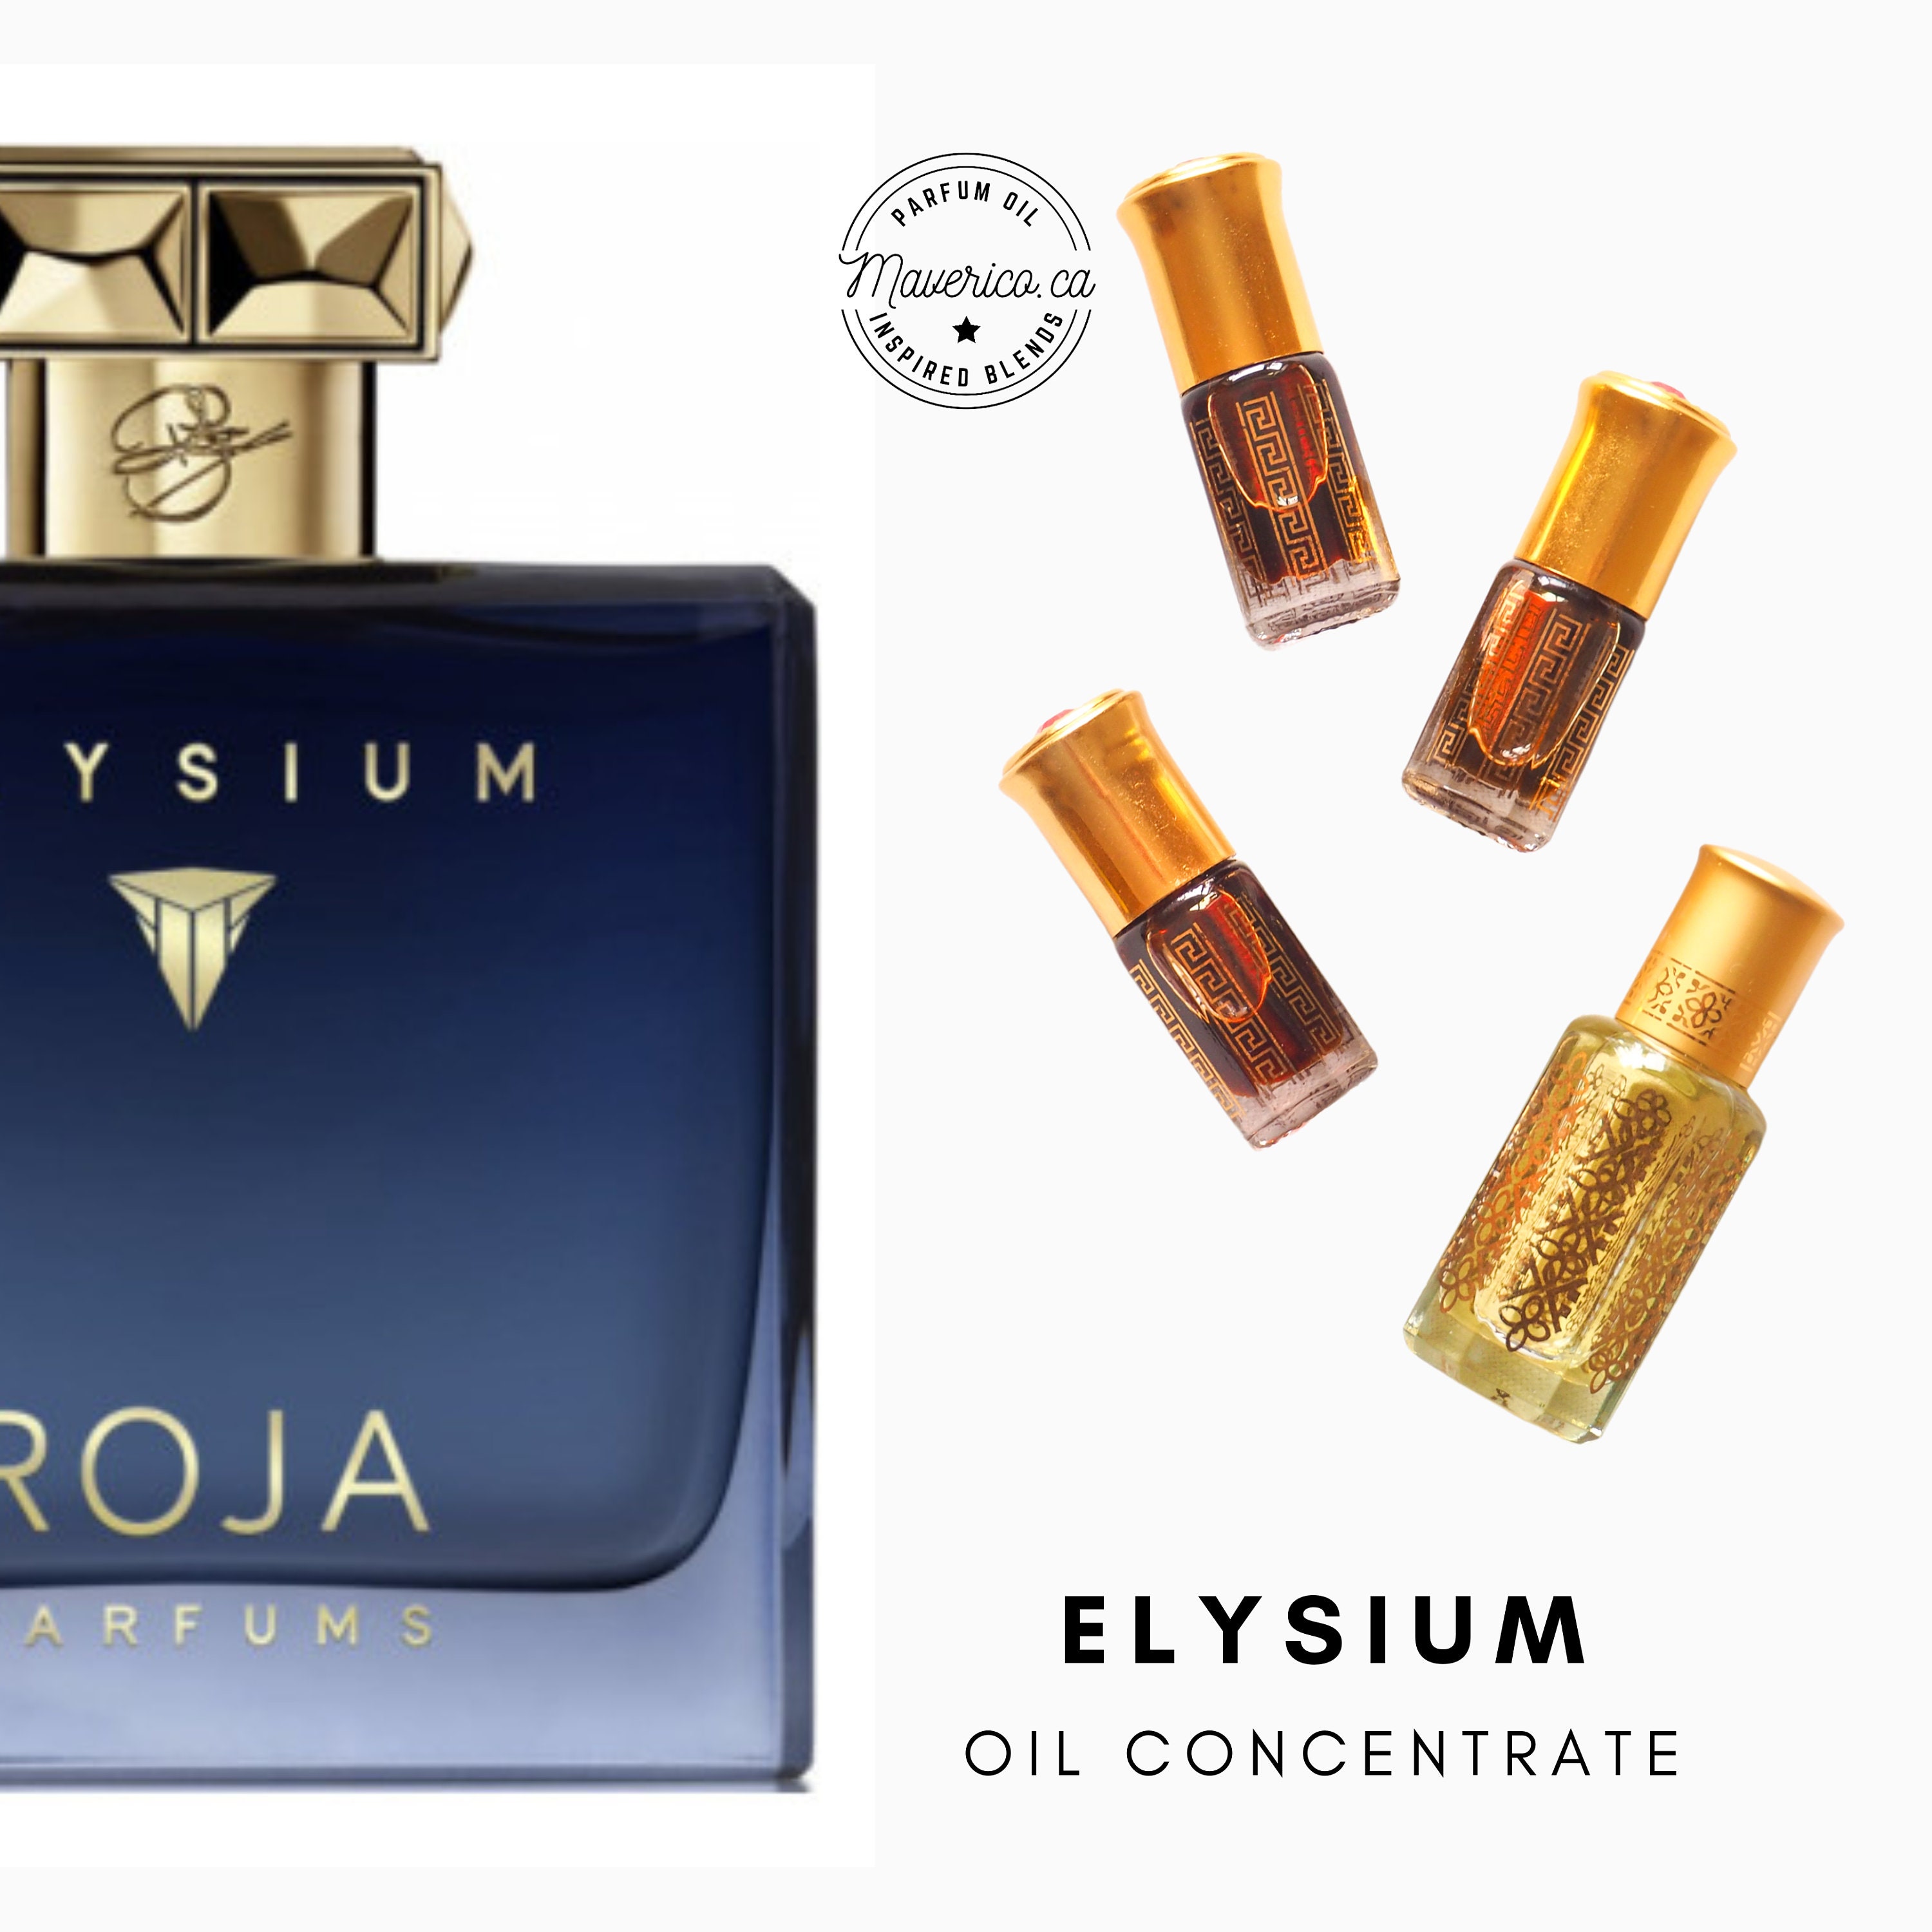 Roja elysium pour homme cologne. Roja dove Elysium Cologne. Elysium Parfum. Roja dove Parfums Elysium. Roja dove Elysium pour homme Cologne.